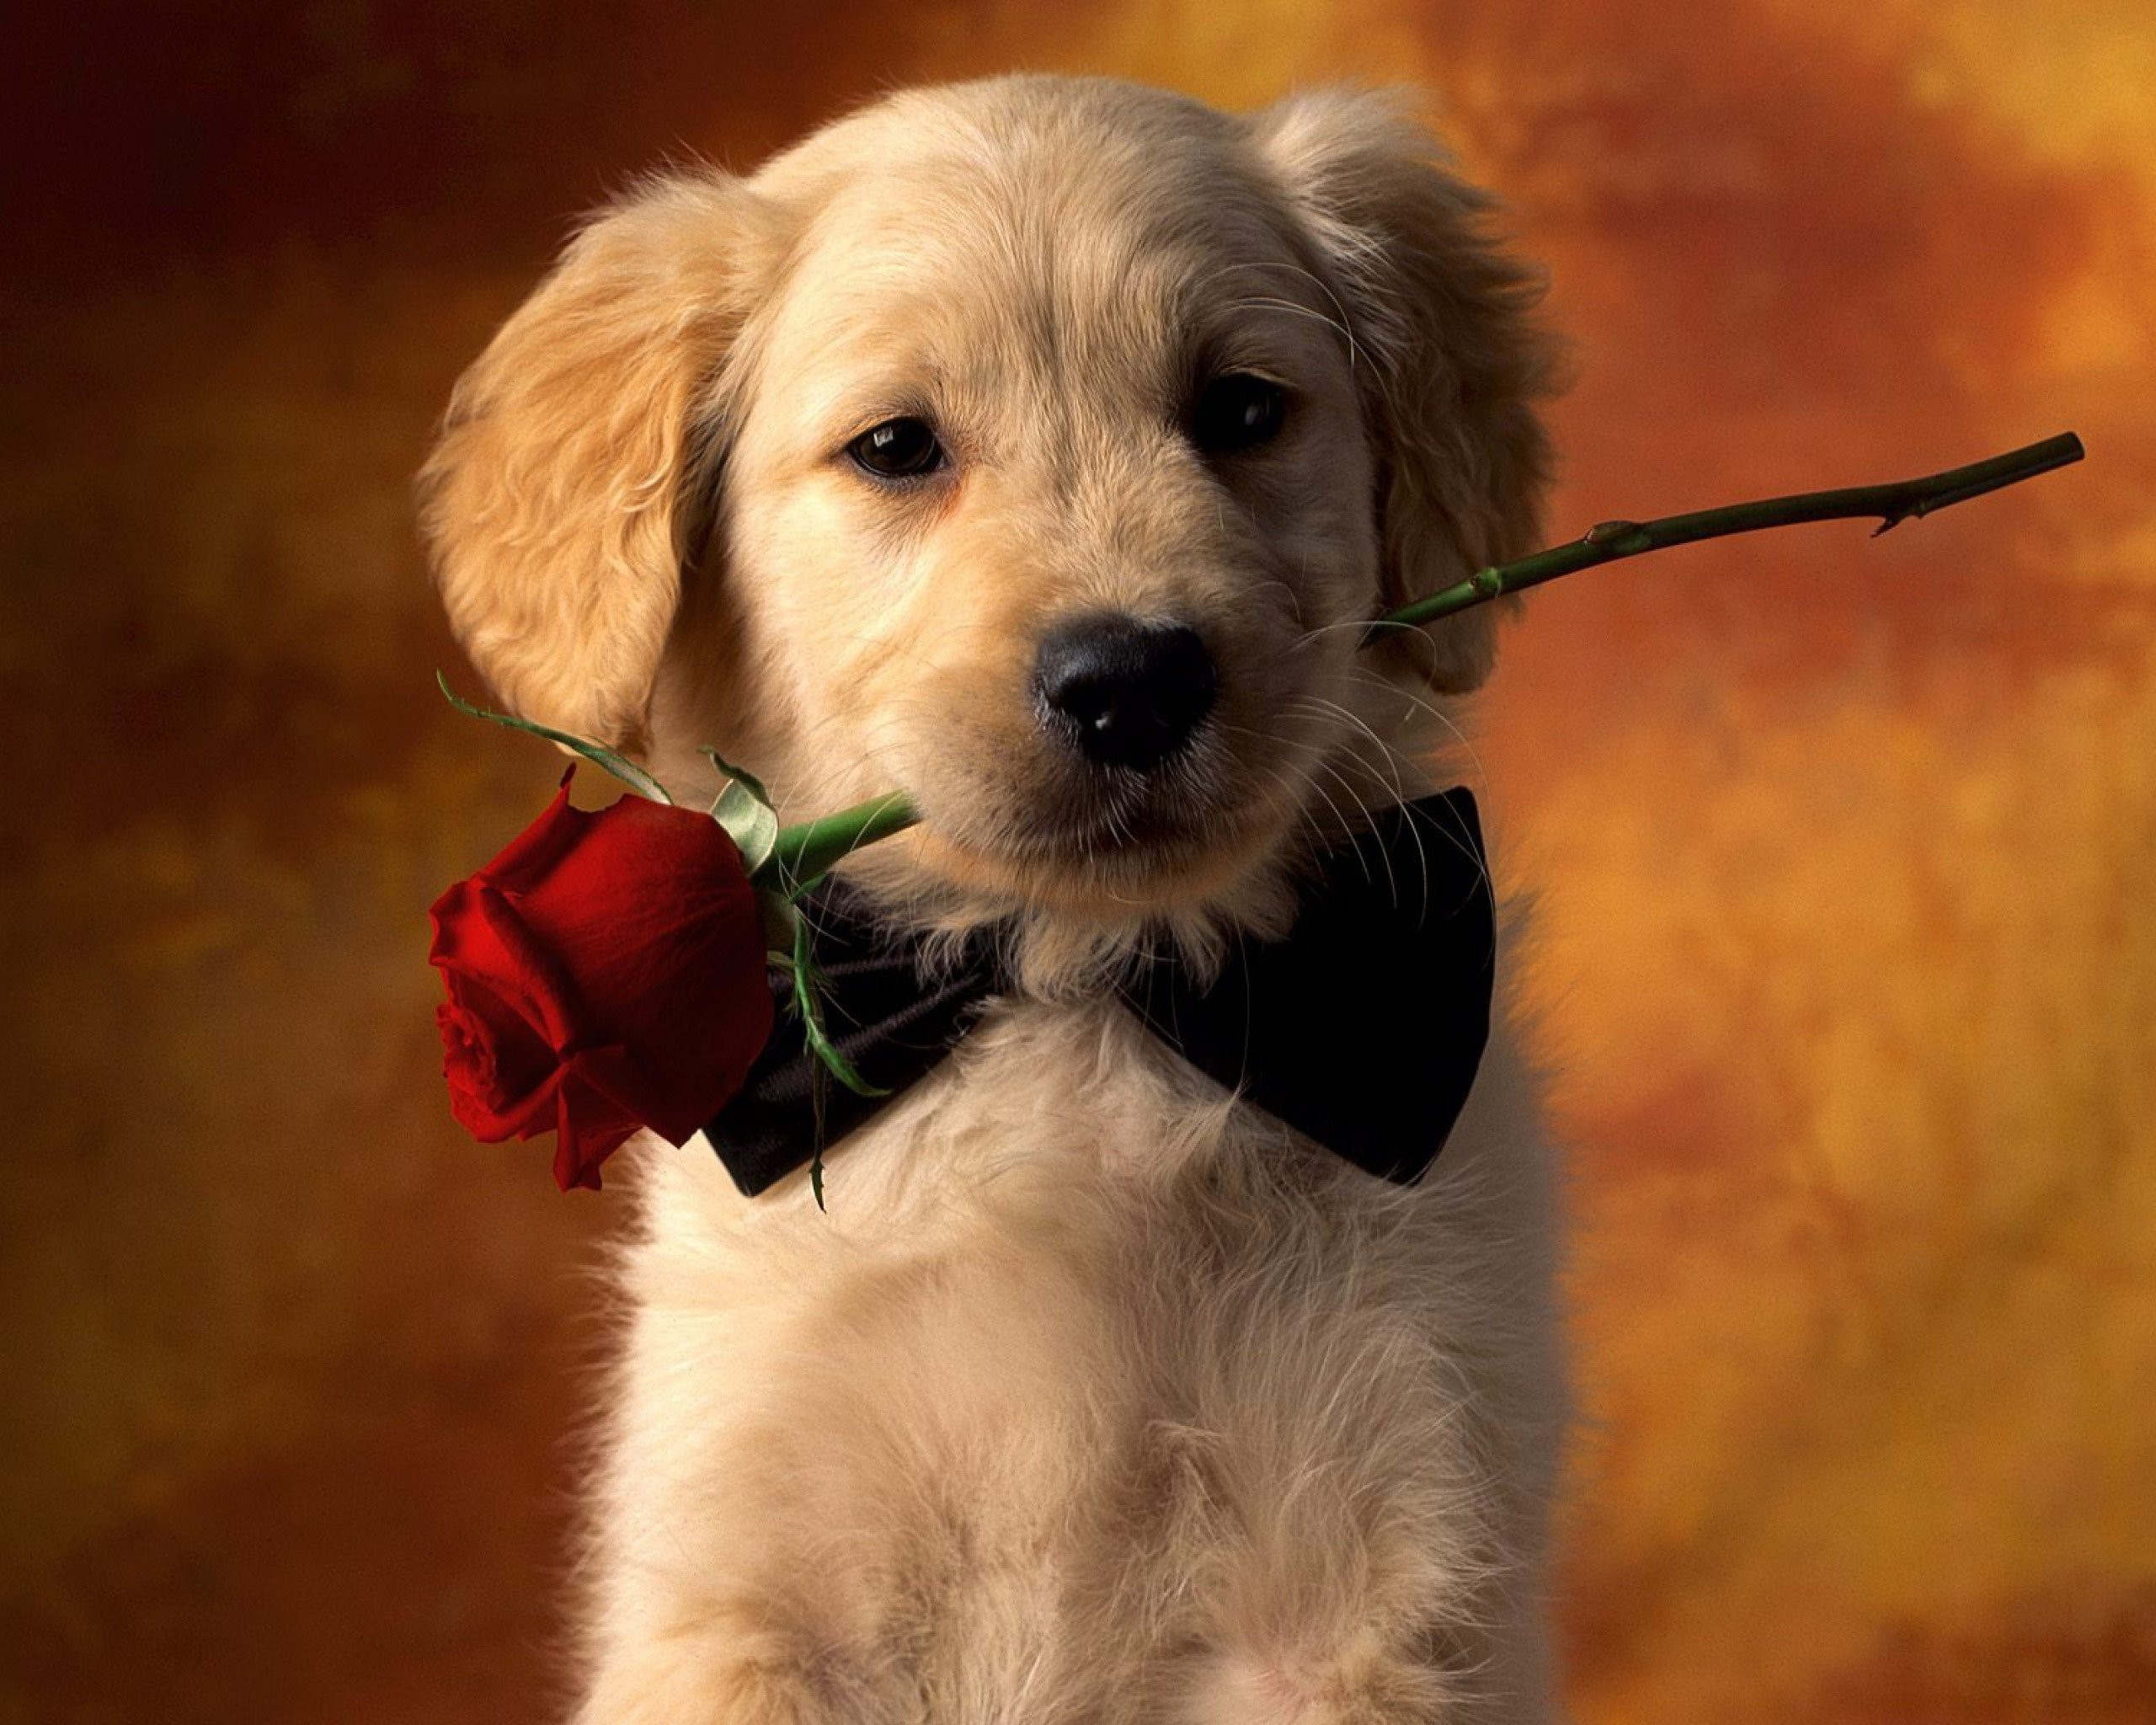 Với hình nền chó con đáng yêu với hoa hồng màu đỏ, bạn sẽ thấy cuộc sống tươi đẹp hơn. Hãy cùng nhìn vào chú chó nhỏ lấp lánh với hoa hồng đỏ rực trên cổ và cảm nhận niềm hạnh phúc trong từng khoảnh khắc.